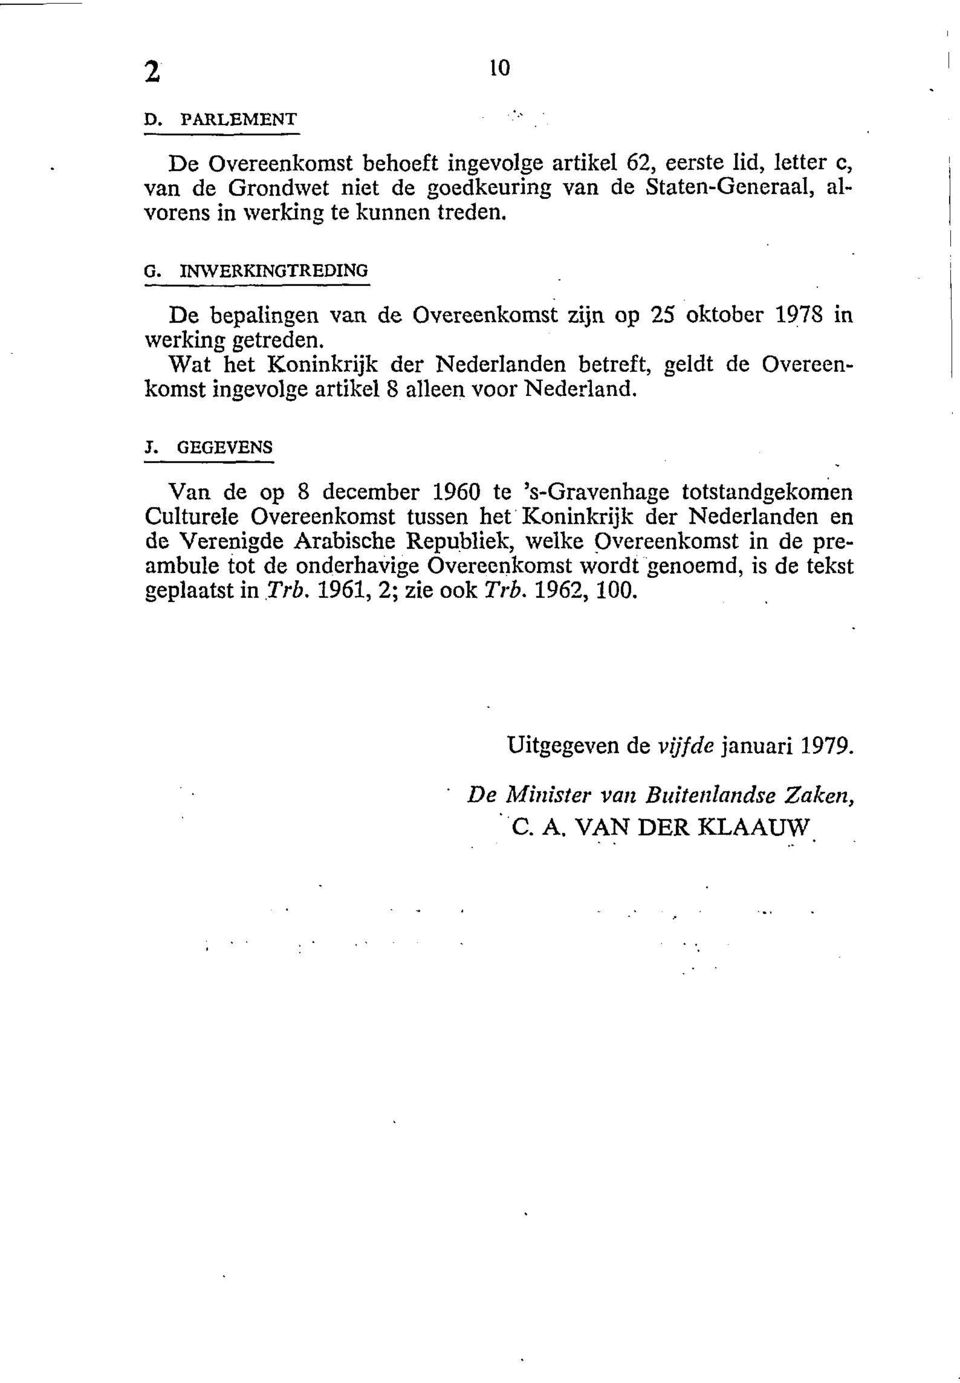 GEGEVENS Van de op 8 december 1960 te 's-gravenhage totstandgekomen Culturele Overeenkomst tussen het Koninkrijk der Nederlanden en de Verenigde Arabische Republiek, welke Overeenkomst in de